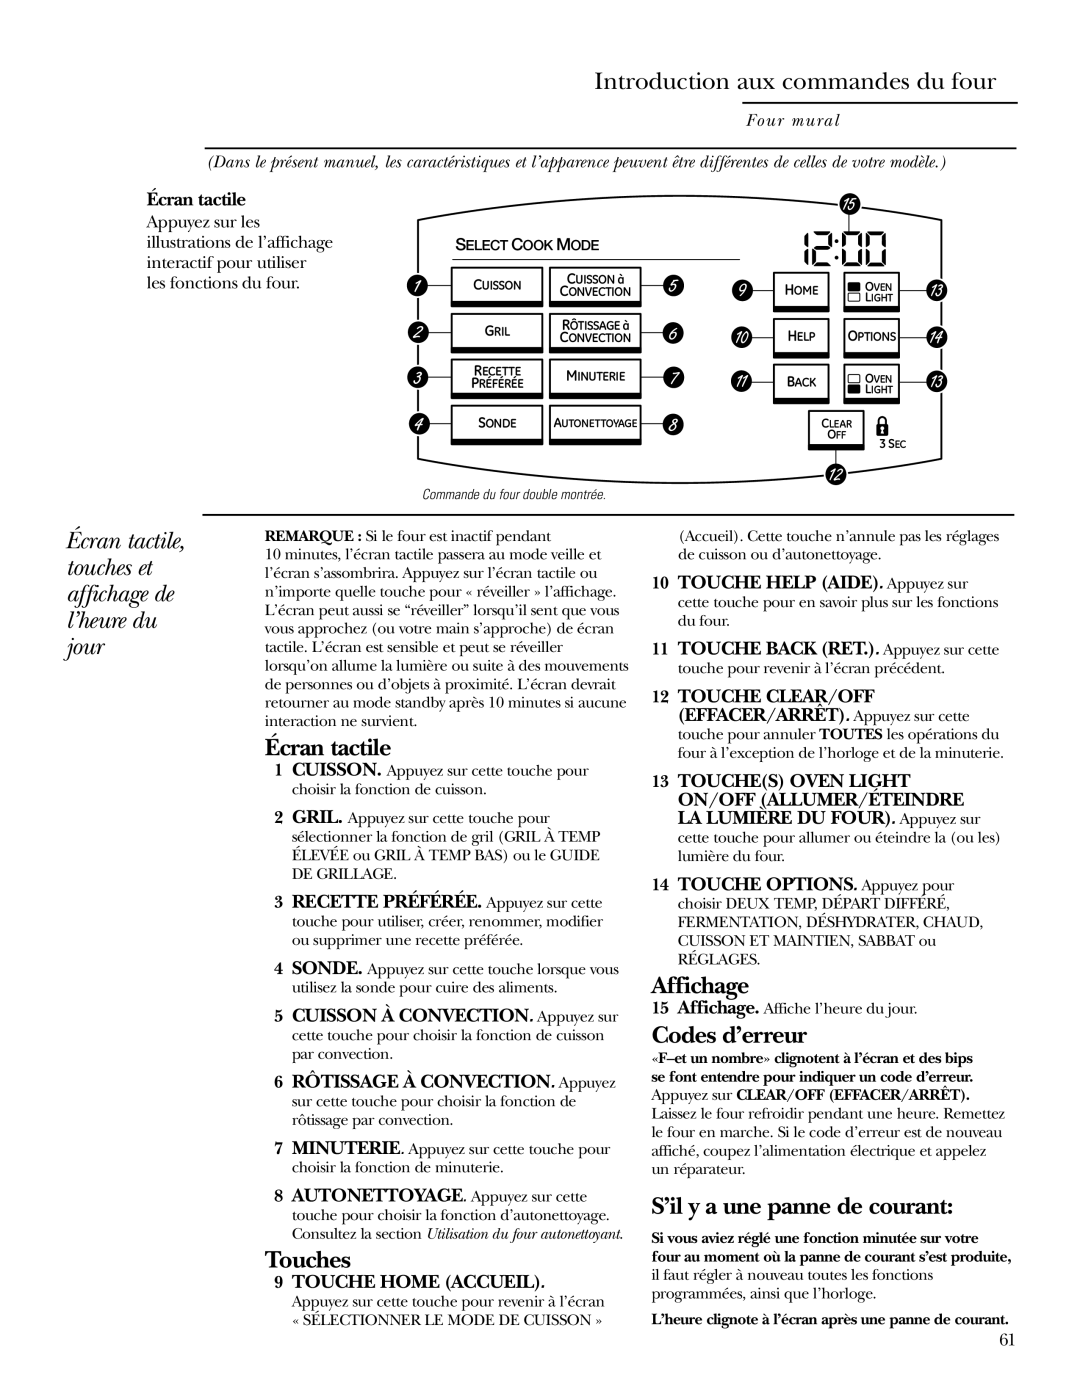 GE ZET1R, ZET2R owner manual Introduction aux commandes du four, Écran tactile, Touches, Affichage, Codes d’erreur 